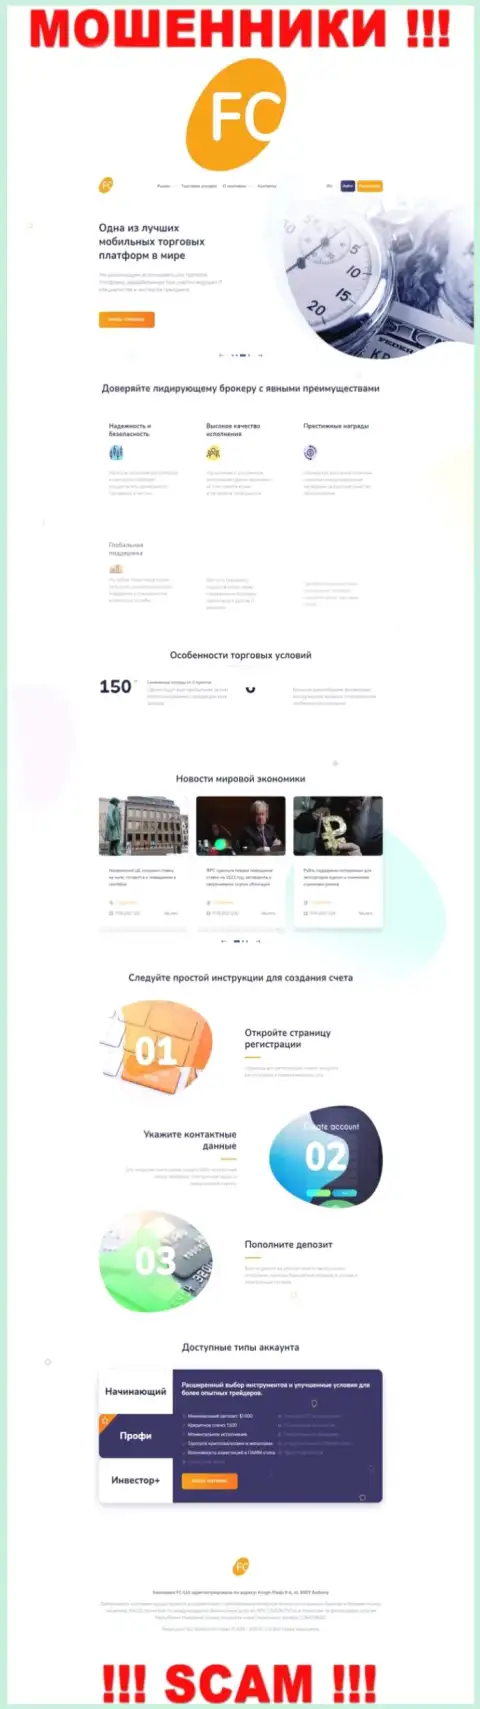 Официальный интернет-портал мошенников FC Ltd, заполненный материалами для лохов